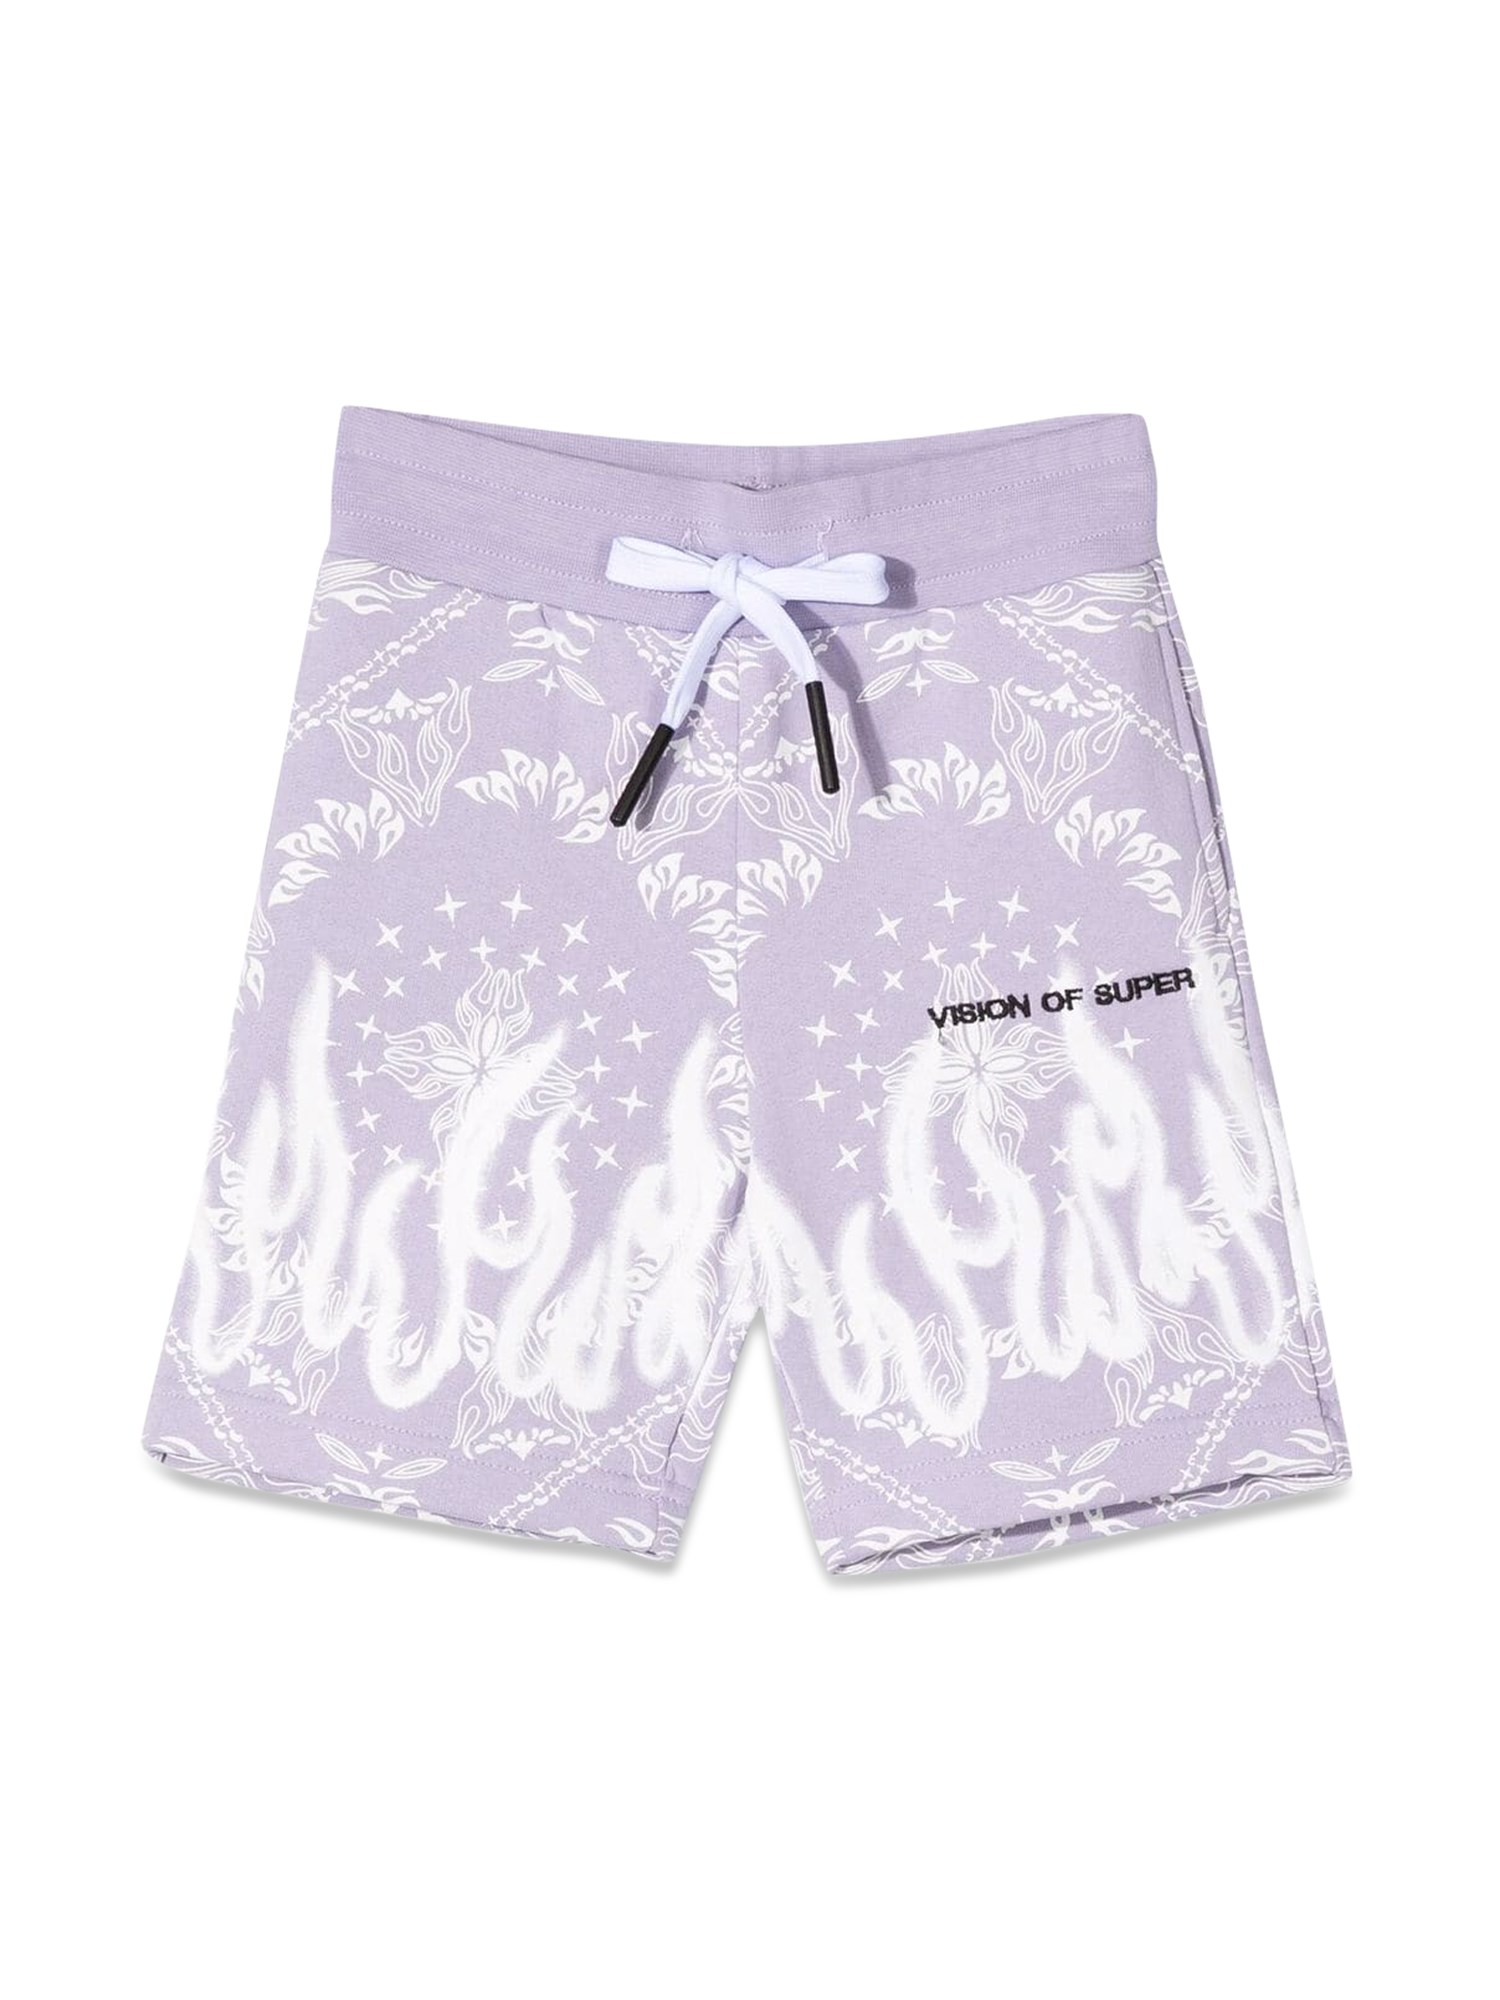 vision of super lilac shorts kids with bandana print